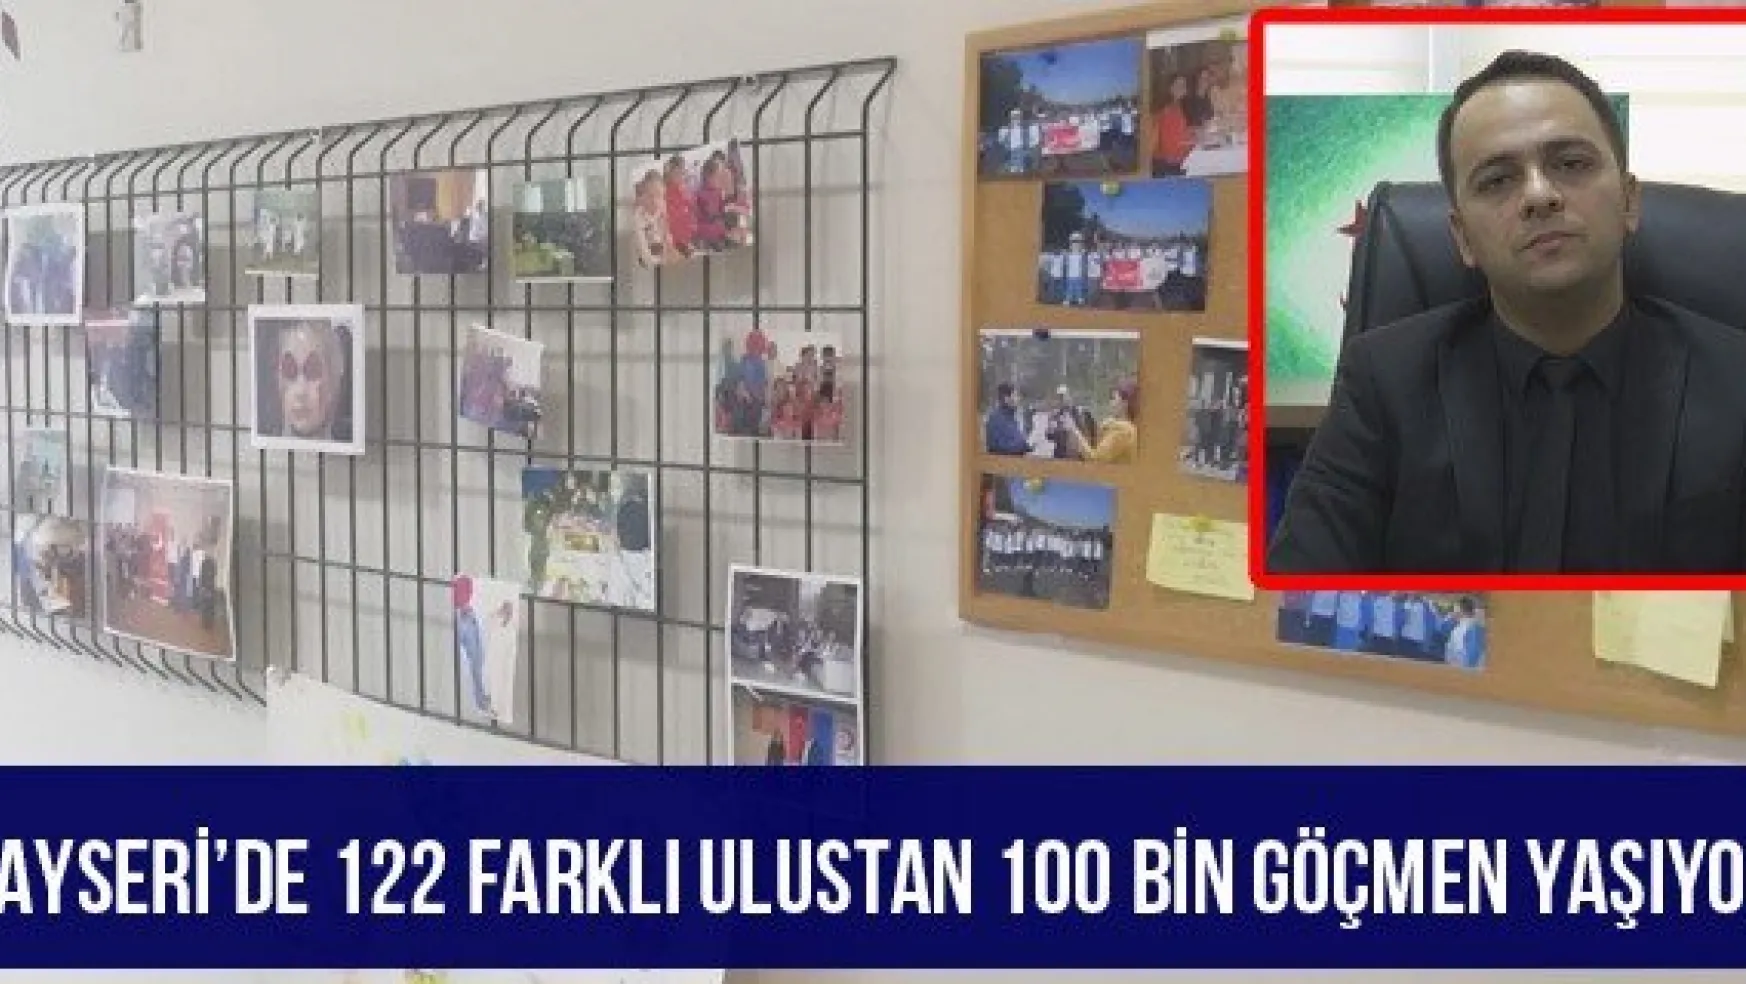 Kayseri'de 122 farklı ulustan 100 bin göçmen yaşıyor